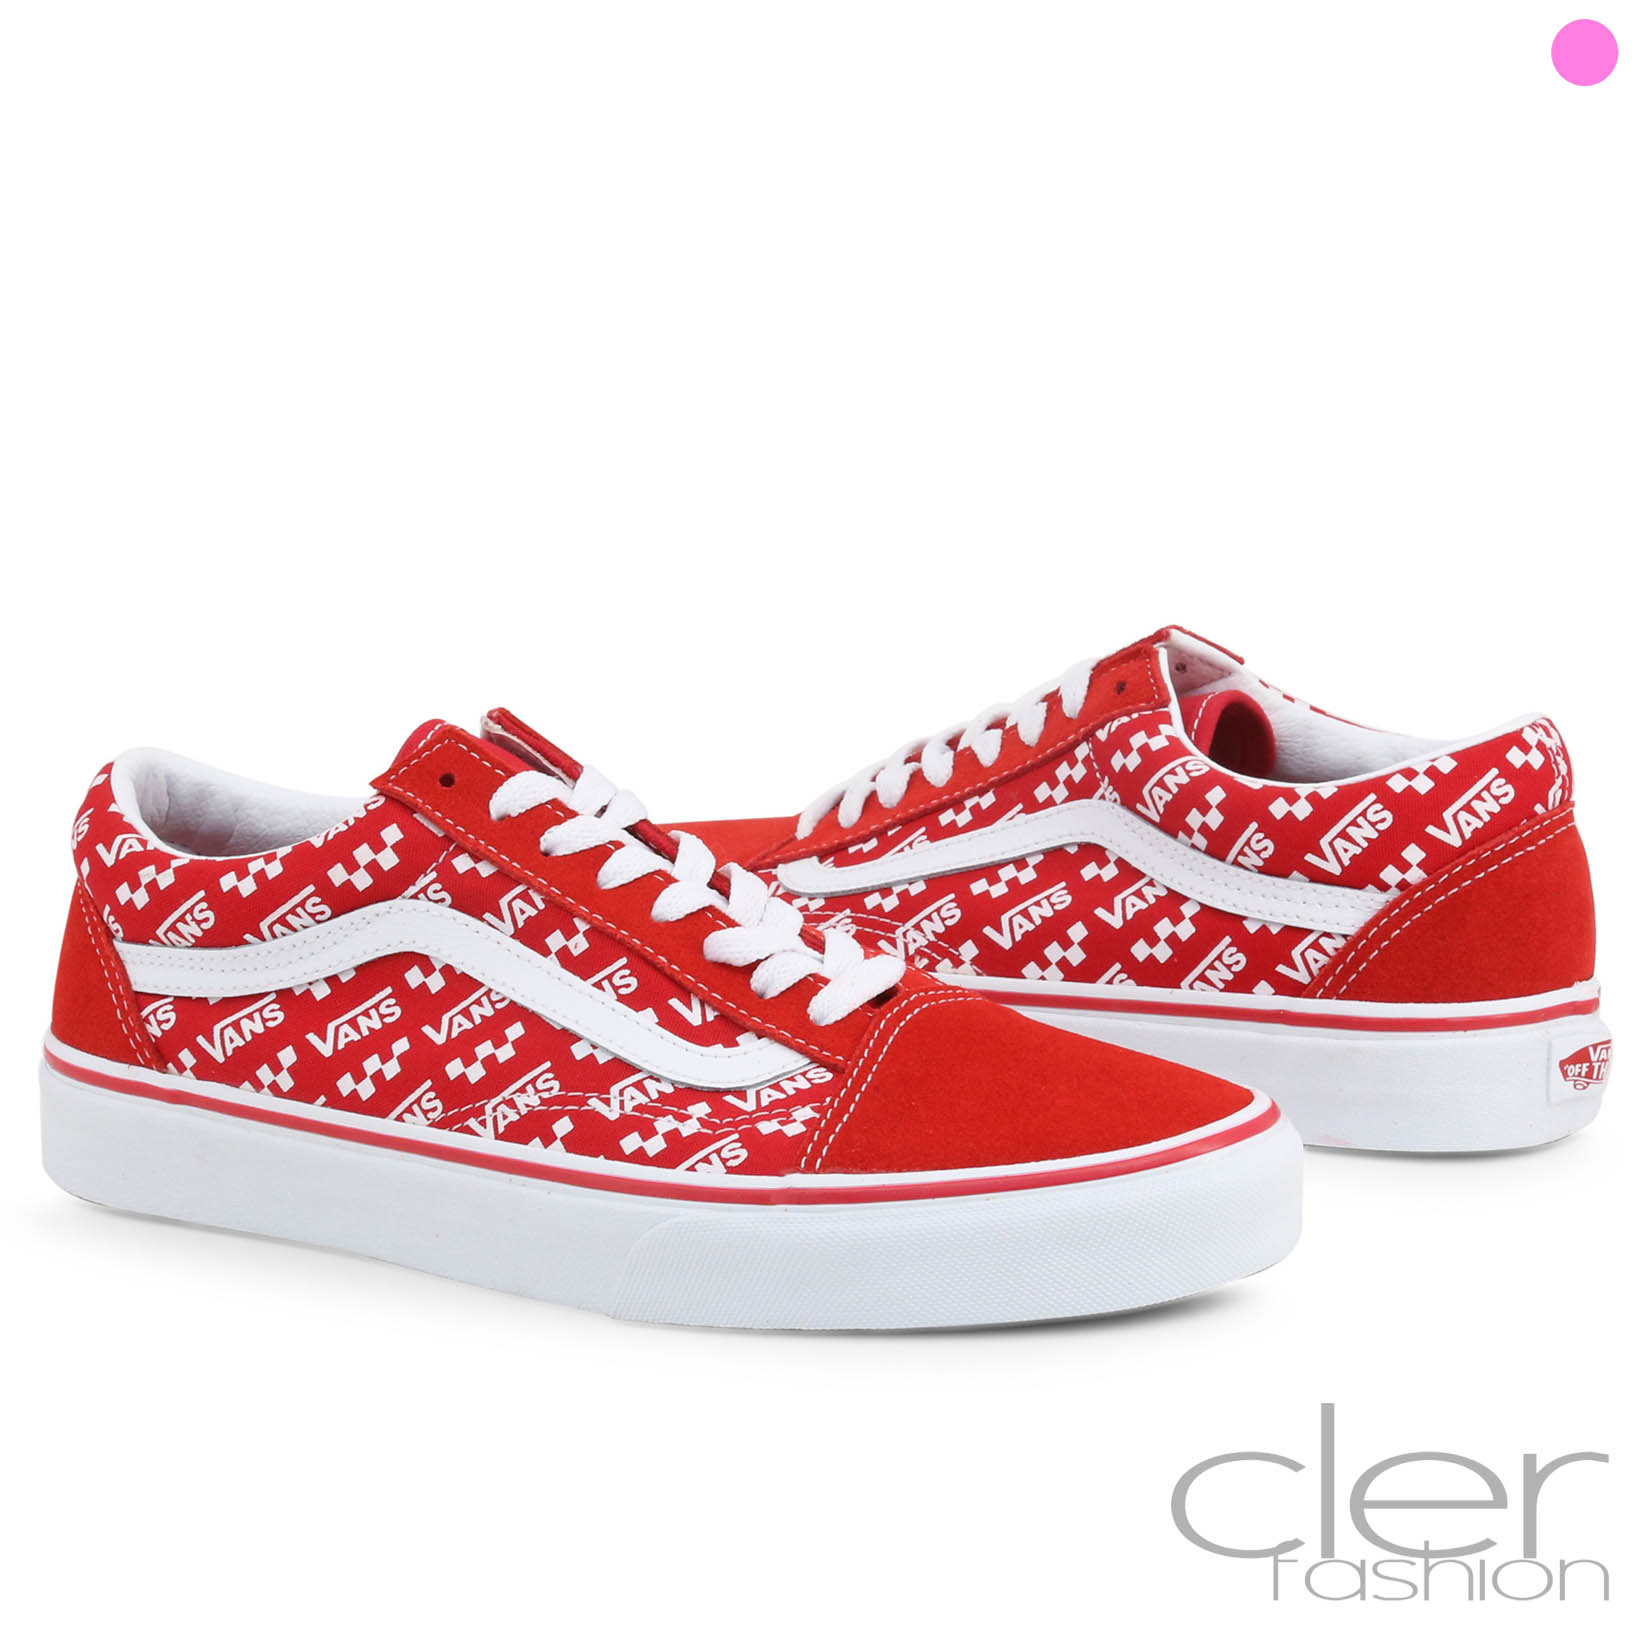 Sneakers Vans OLD-SKOOL_VN0A4U3B Unisex Rojo 109312 Originales | eBay